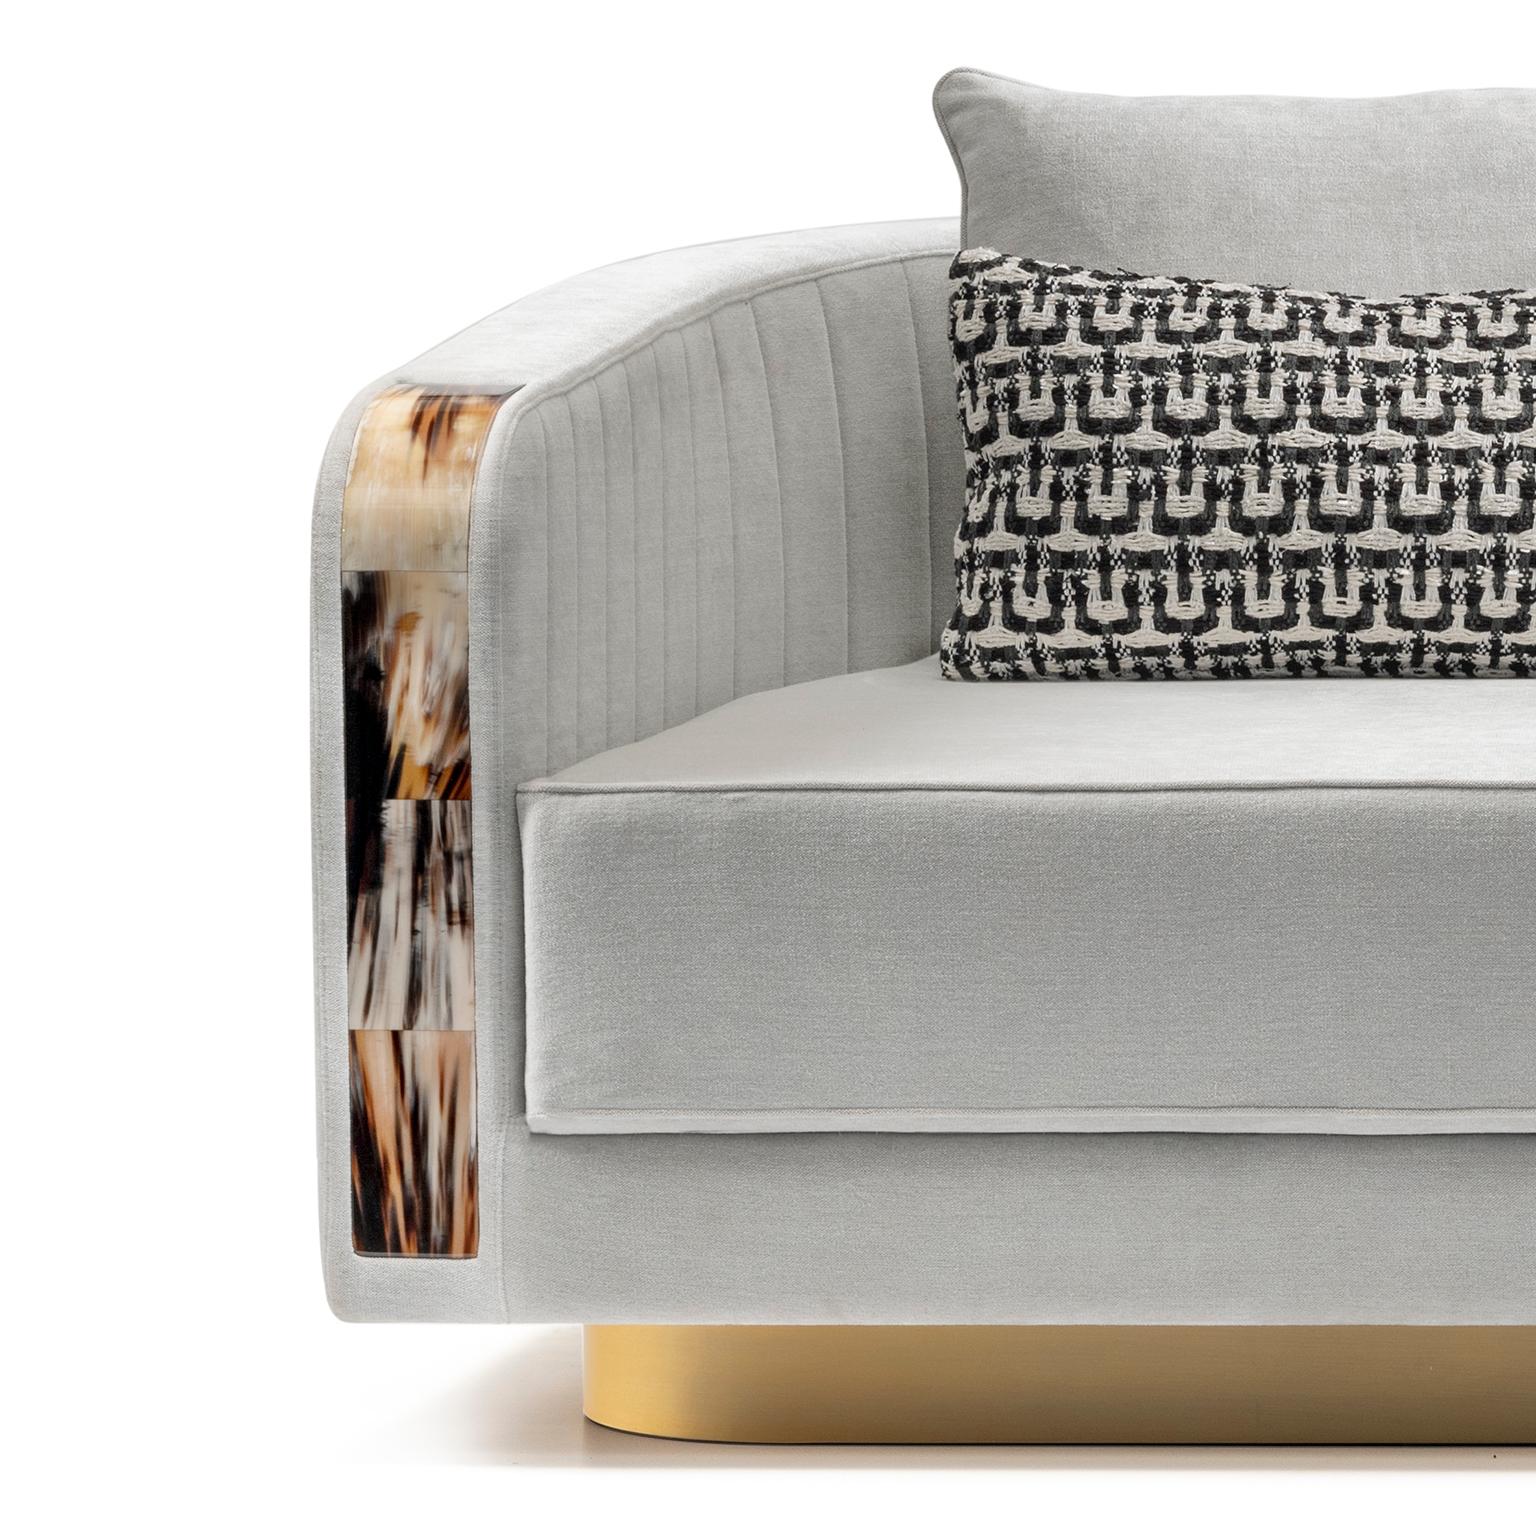 Das Sofa Afrodite zeichnet sich durch sanfte Linien und plüschige Materialien aus und verleiht Ihrer Einrichtung Raffinesse und Klasse. Die geschwungenen Akzente aus Corno Italiano bilden einen exquisiten strukturellen Kontrast zur Polsterung, die